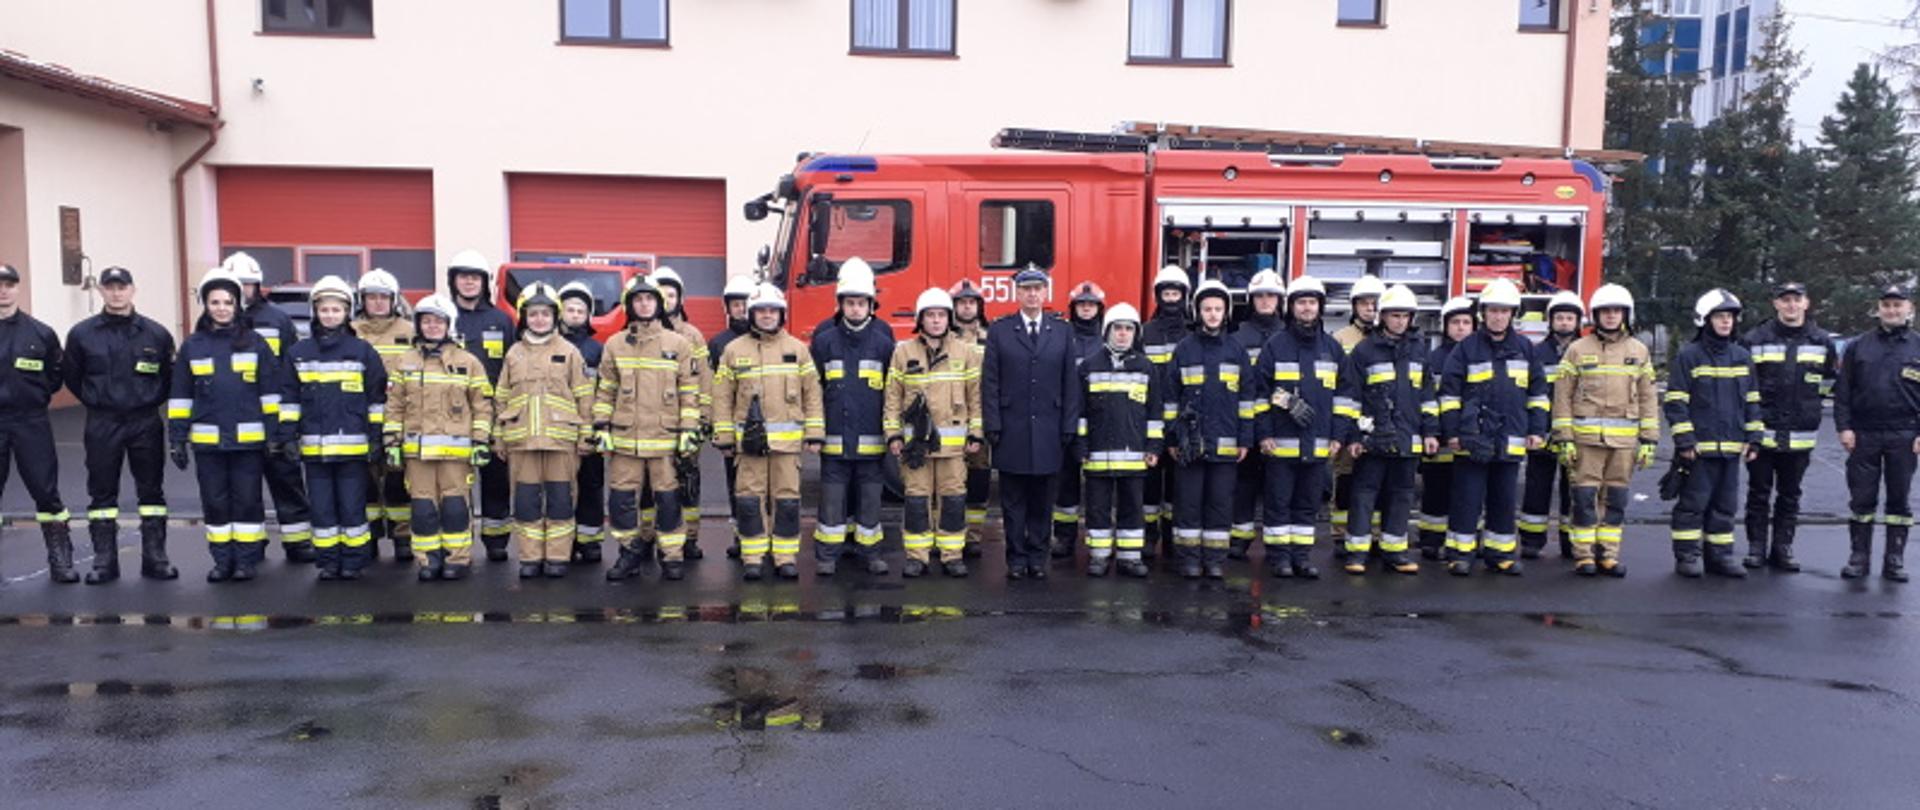 Szkolenie podstawowe strażaka ratownika ochotniczych straży pożarnych 